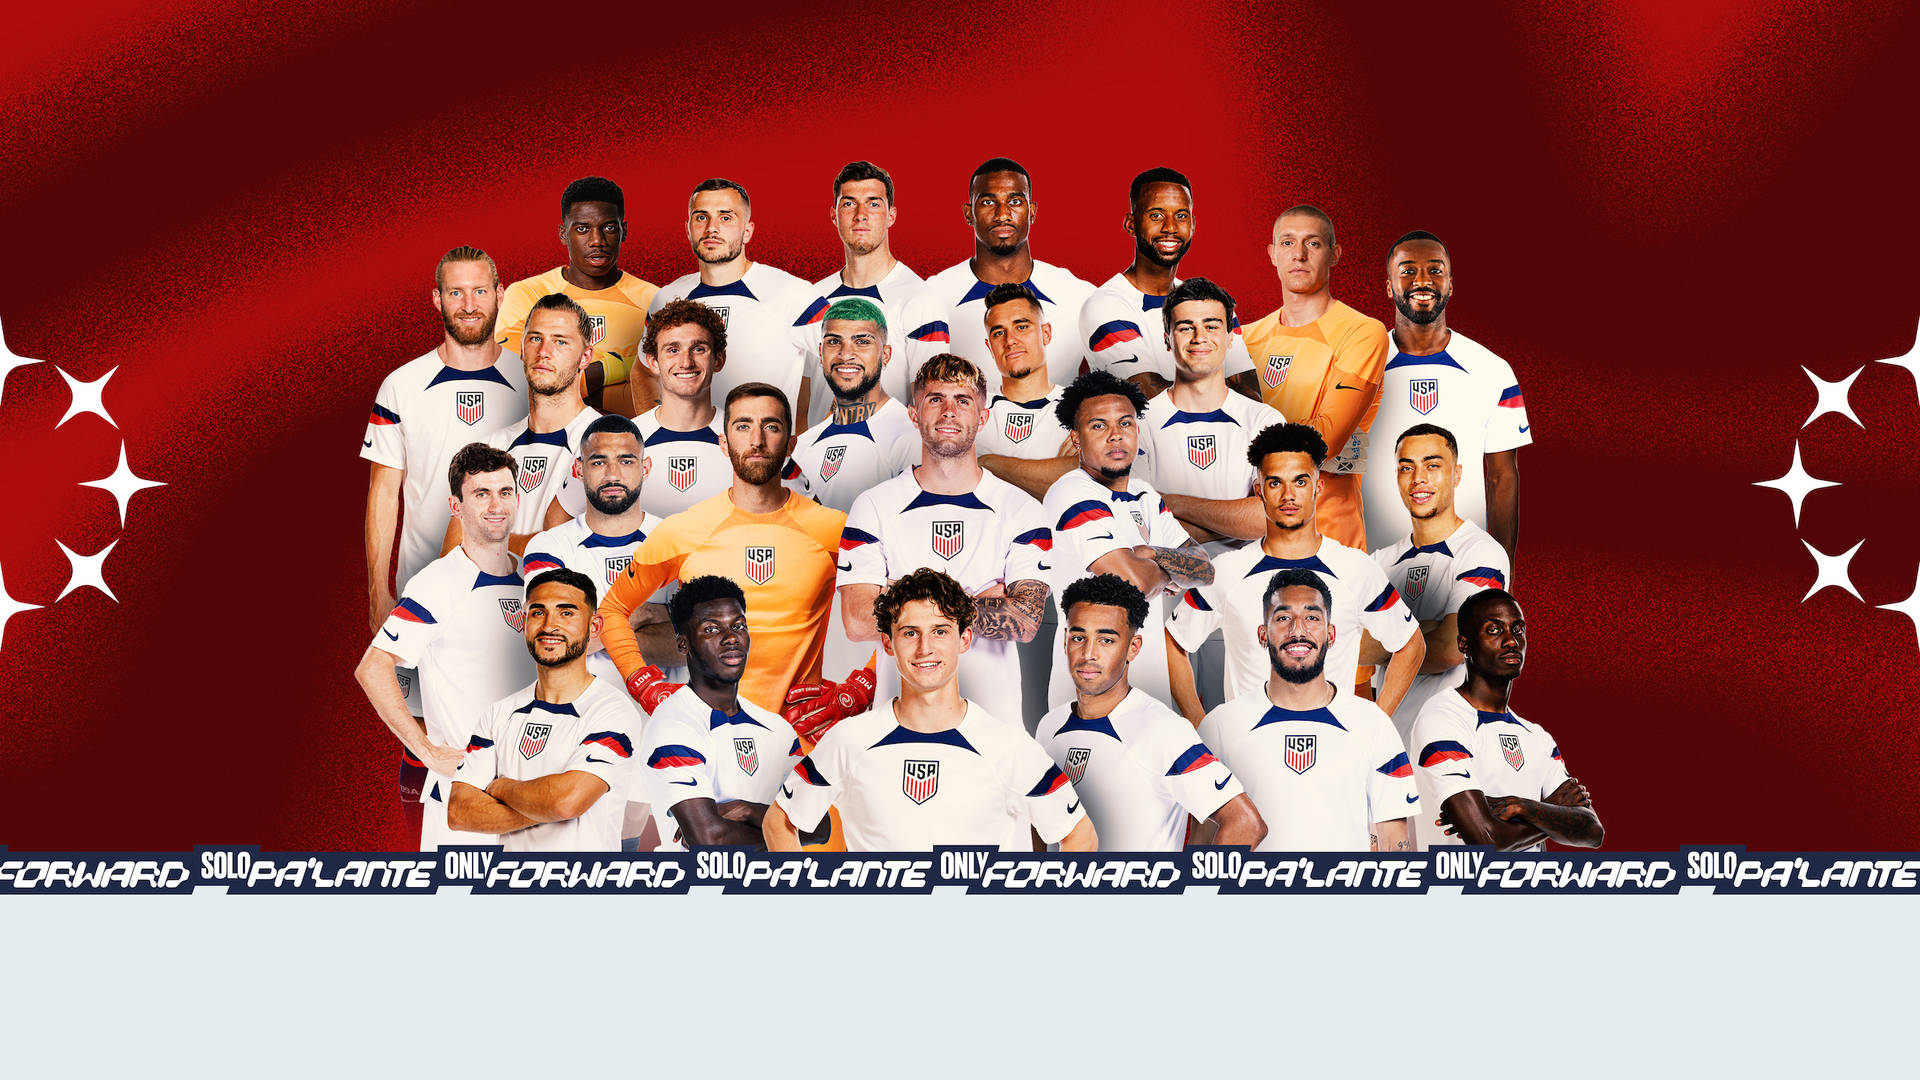 Officielt spillere fra det amerikanske nationale fodboldhold tapet Wallpaper